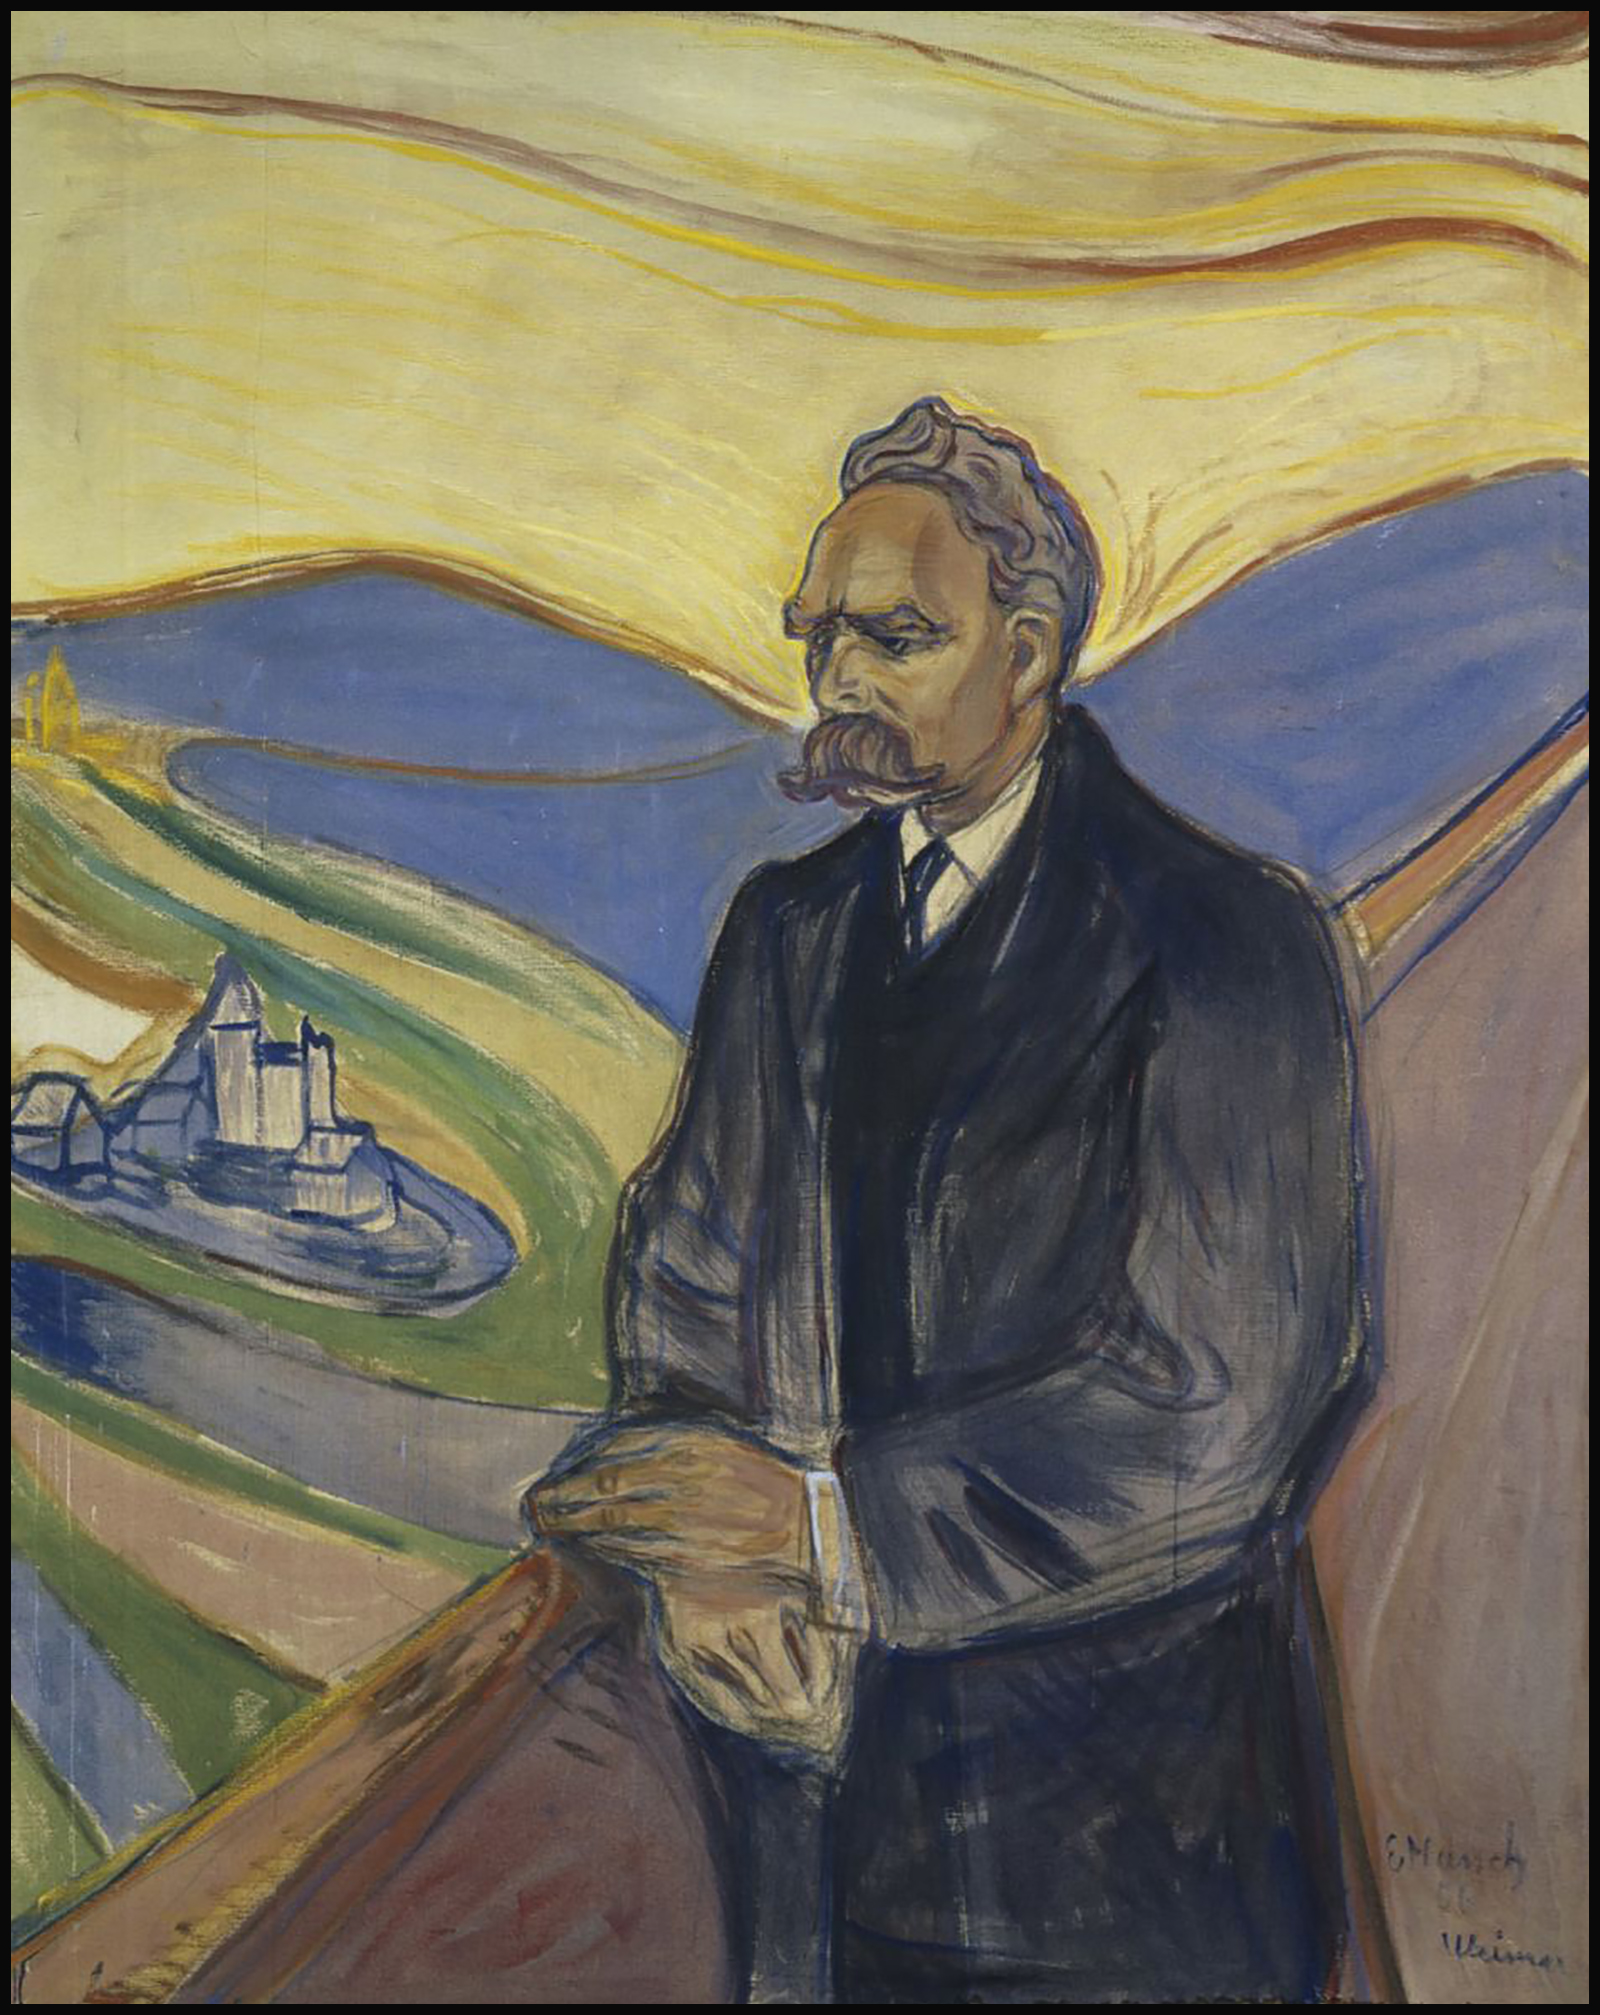 Friederich_Nietzsche par Edvard Munch,1906